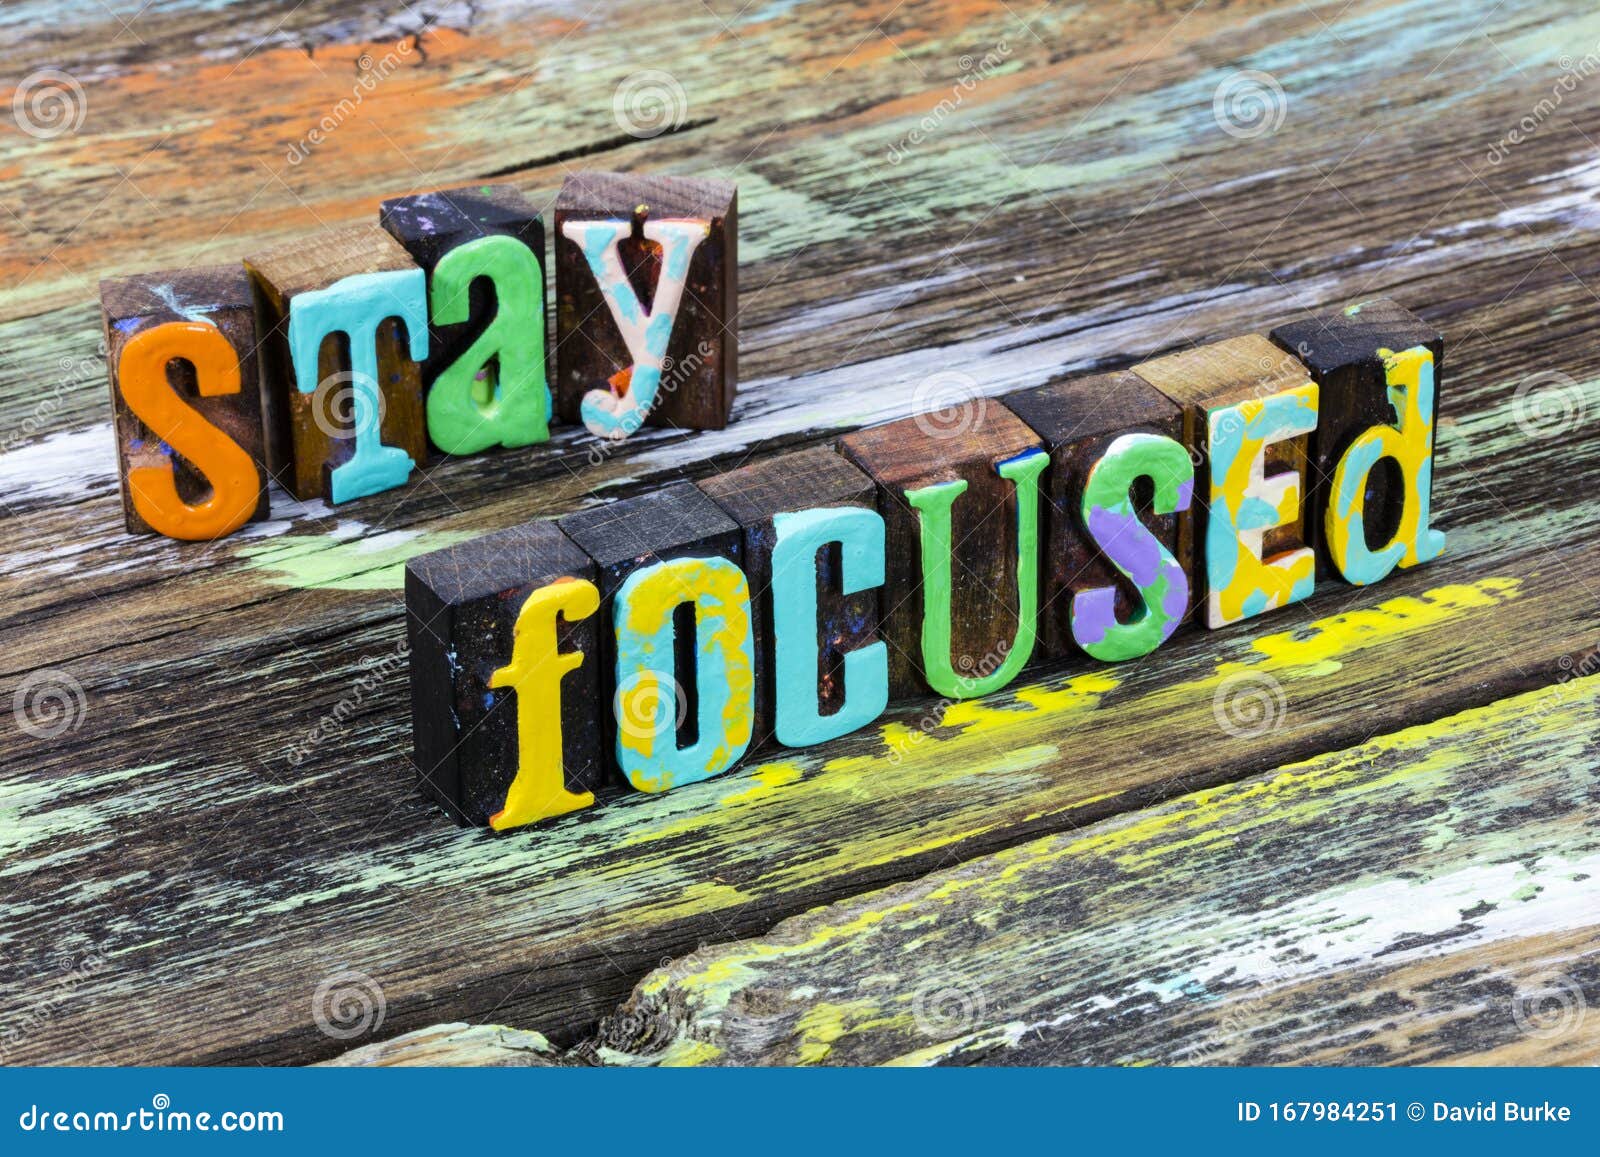 focus focused objective deliberate success perspective plan positive motivation attitude